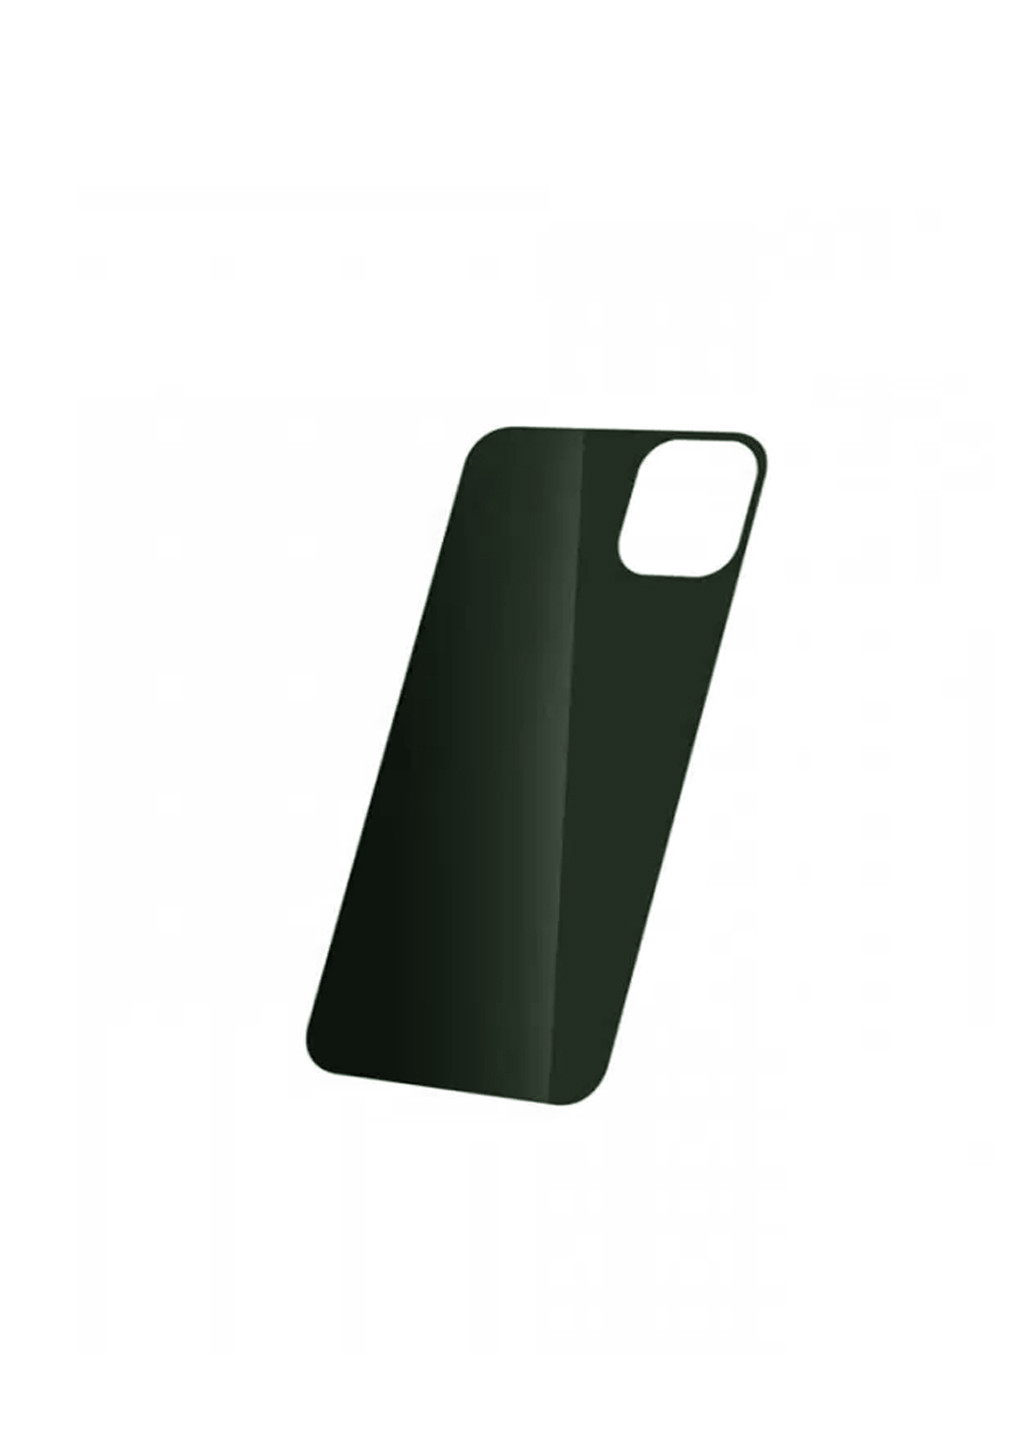 Стекло защитное на заднюю панель цветное глянцевое для iPhone 11 Pro Dark Green CAA (220512485)